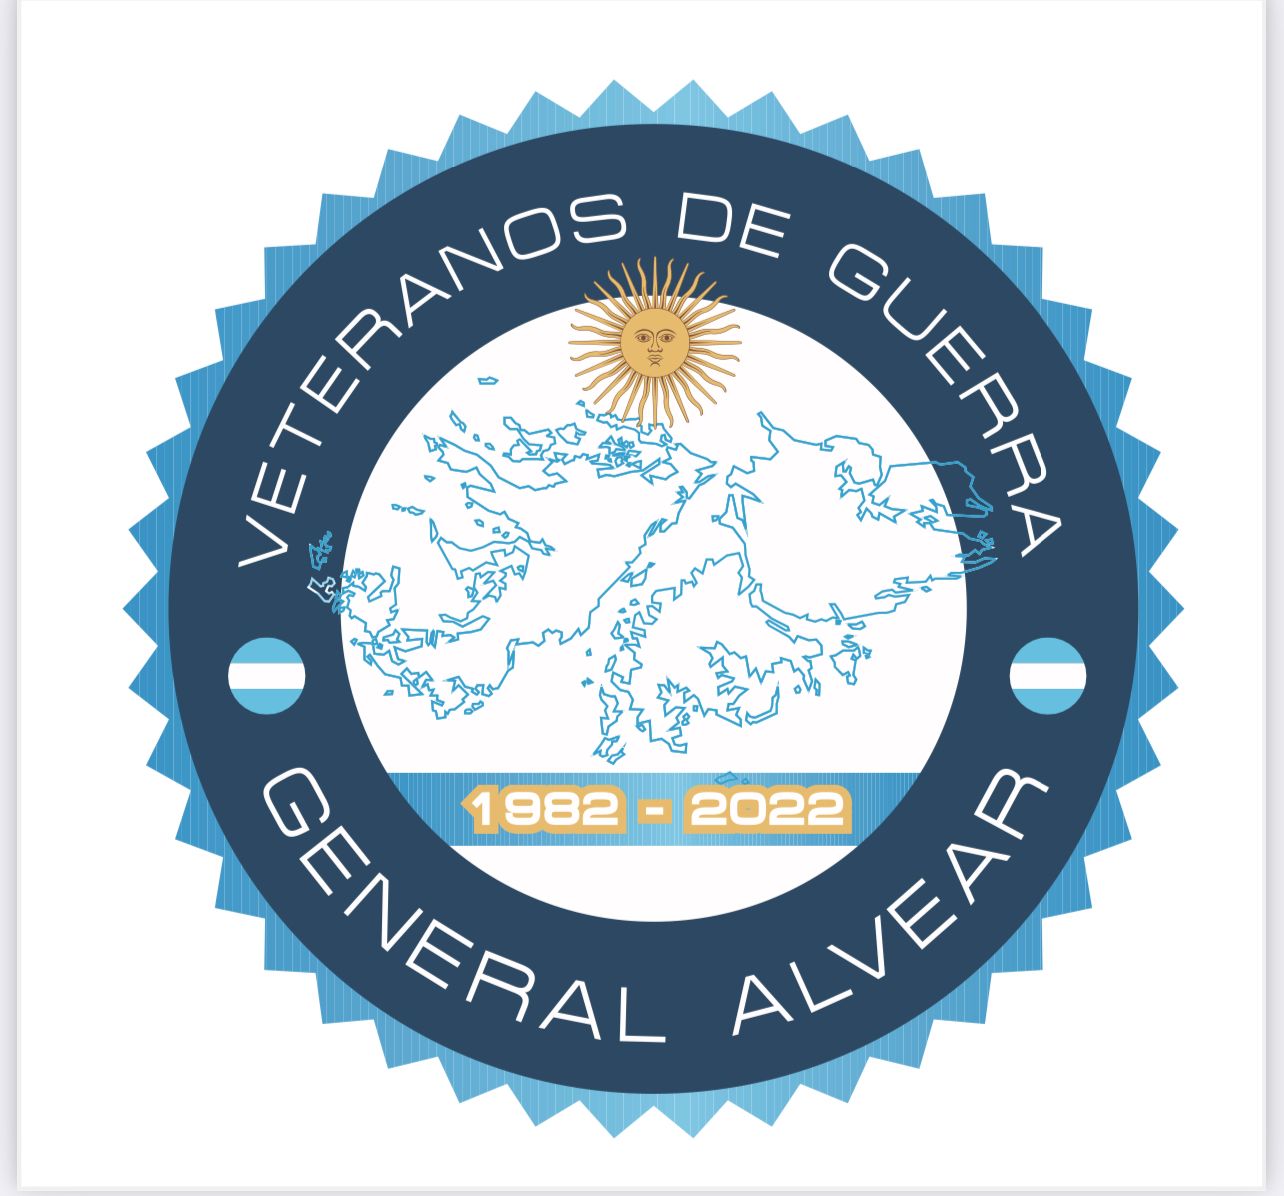 Malvinas 40 años: En General Alvear repartirán calcos recordatorios gratuitos a los vecinos 